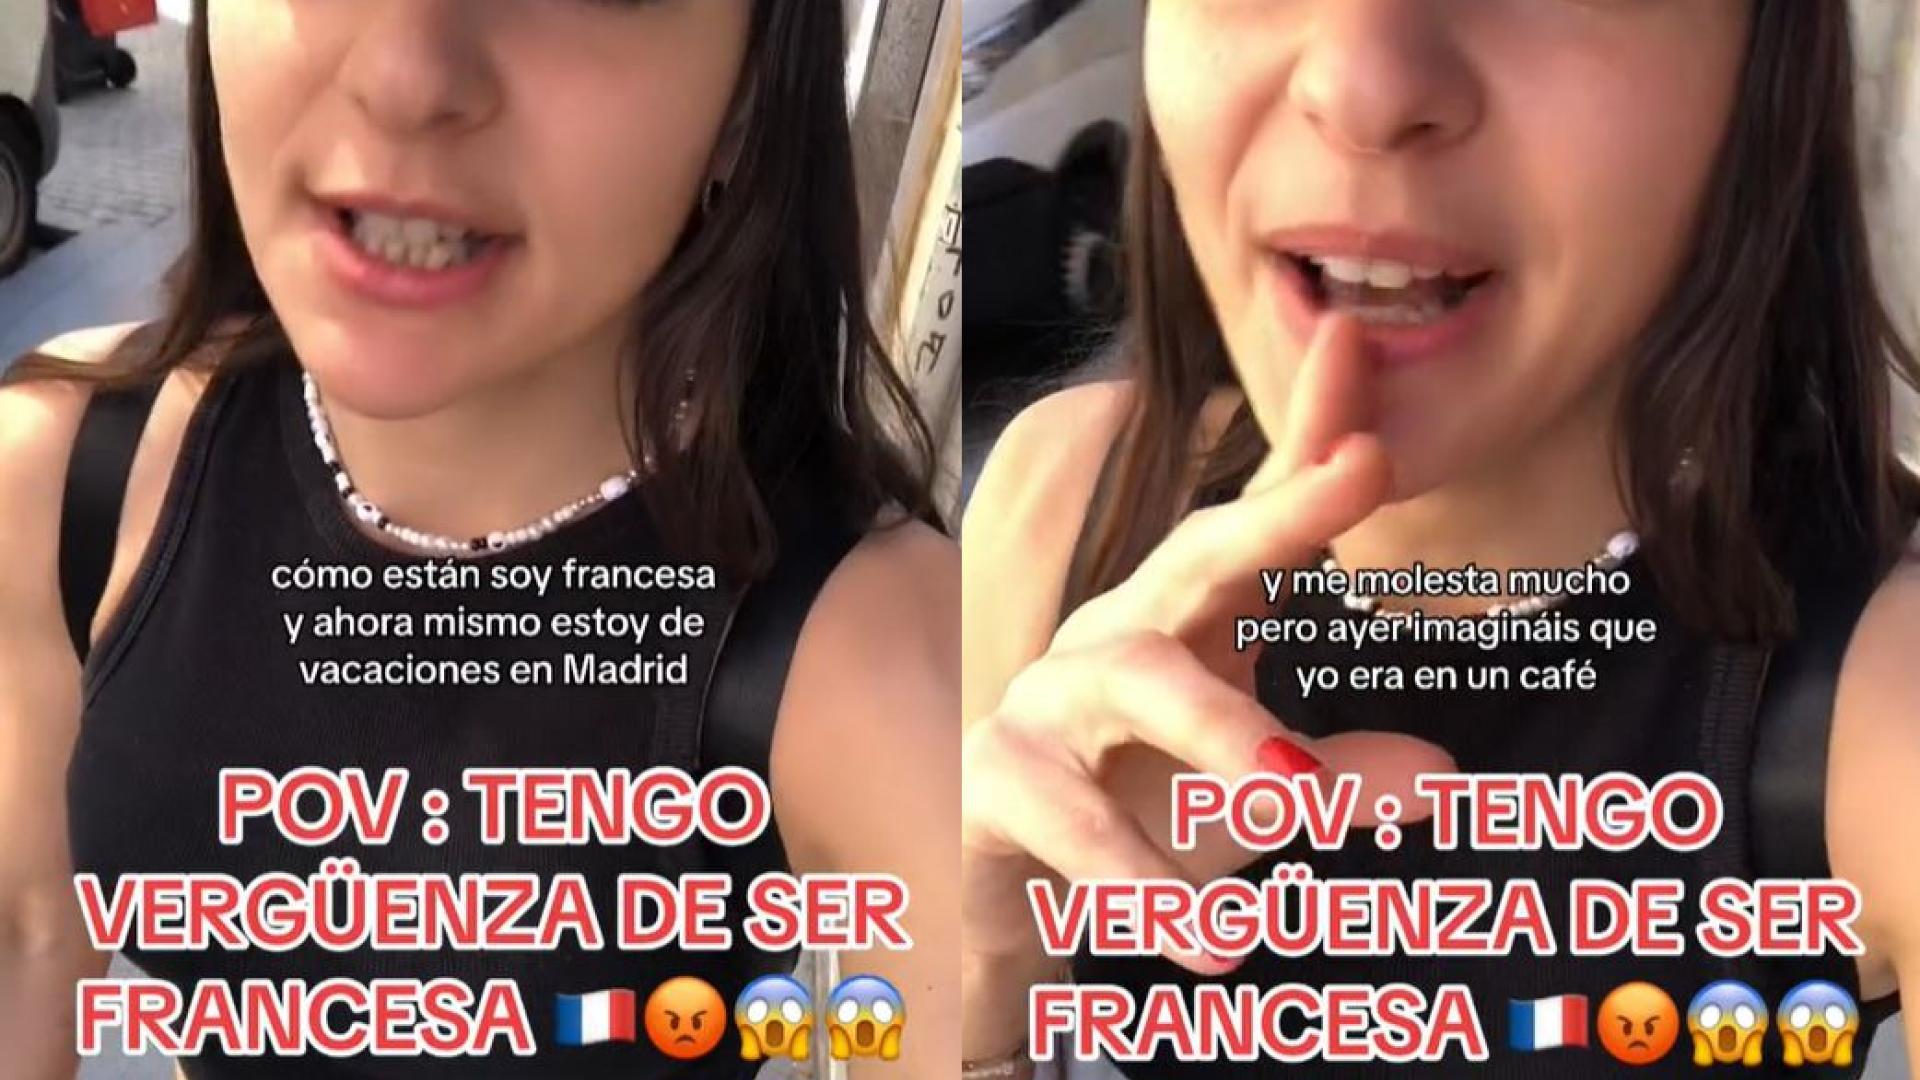 una joven francesa visita madrid y destaca el buen trato que tienen los españoles con los extranjeros